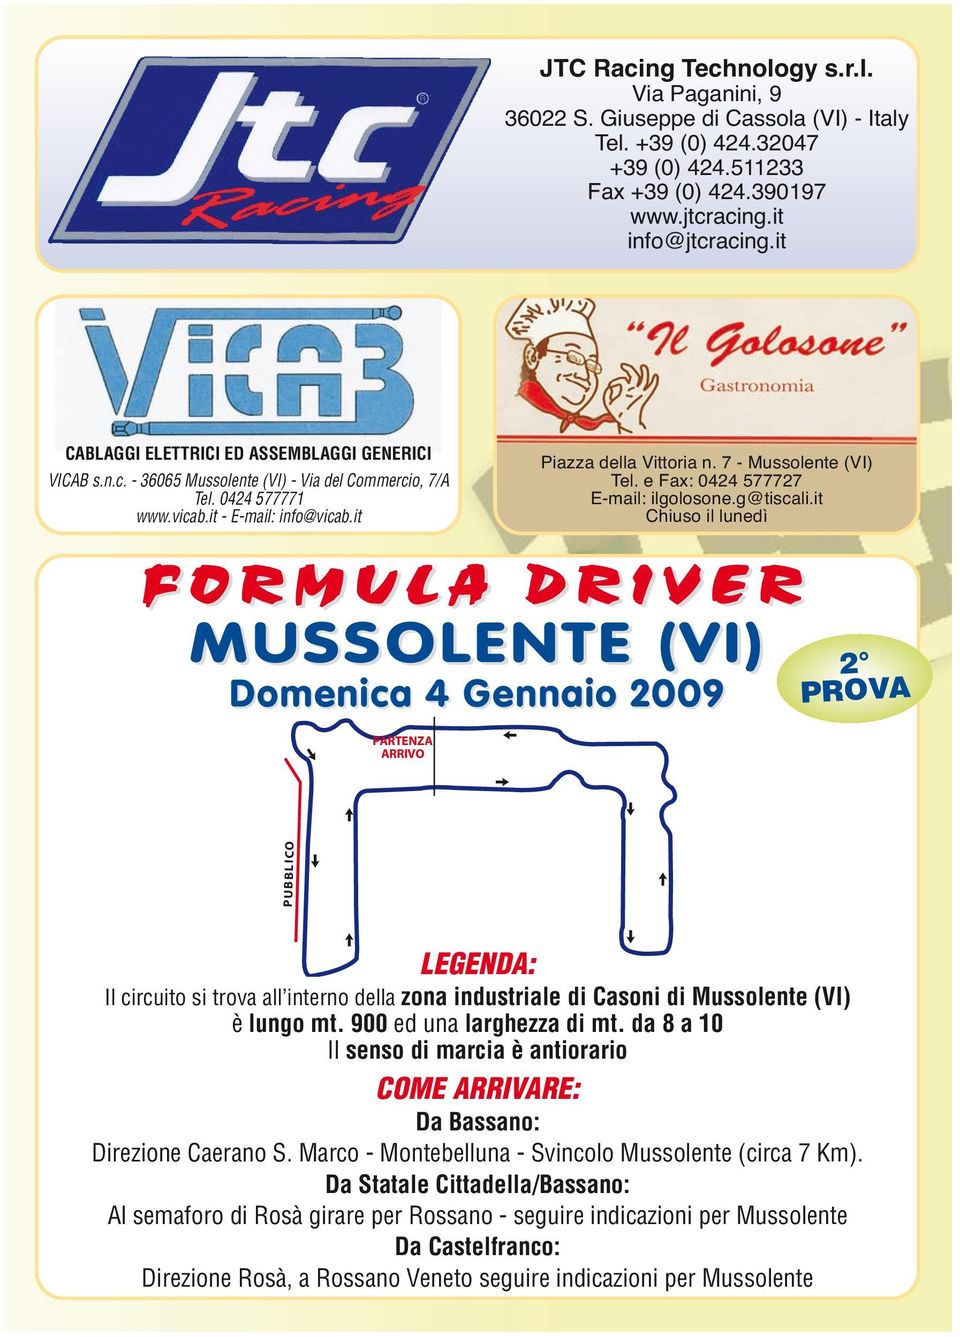 it FORMULA DRIVER MUSSOLENTE (VI) Domenica 4 Gennaio 2009 PARTENZA ARRIVO Piazza della Vittoria n. 7 - Mussolente (VI) Tel. e Fax: 0424 577727 E-mail: ilgolosone.g@tiscali.